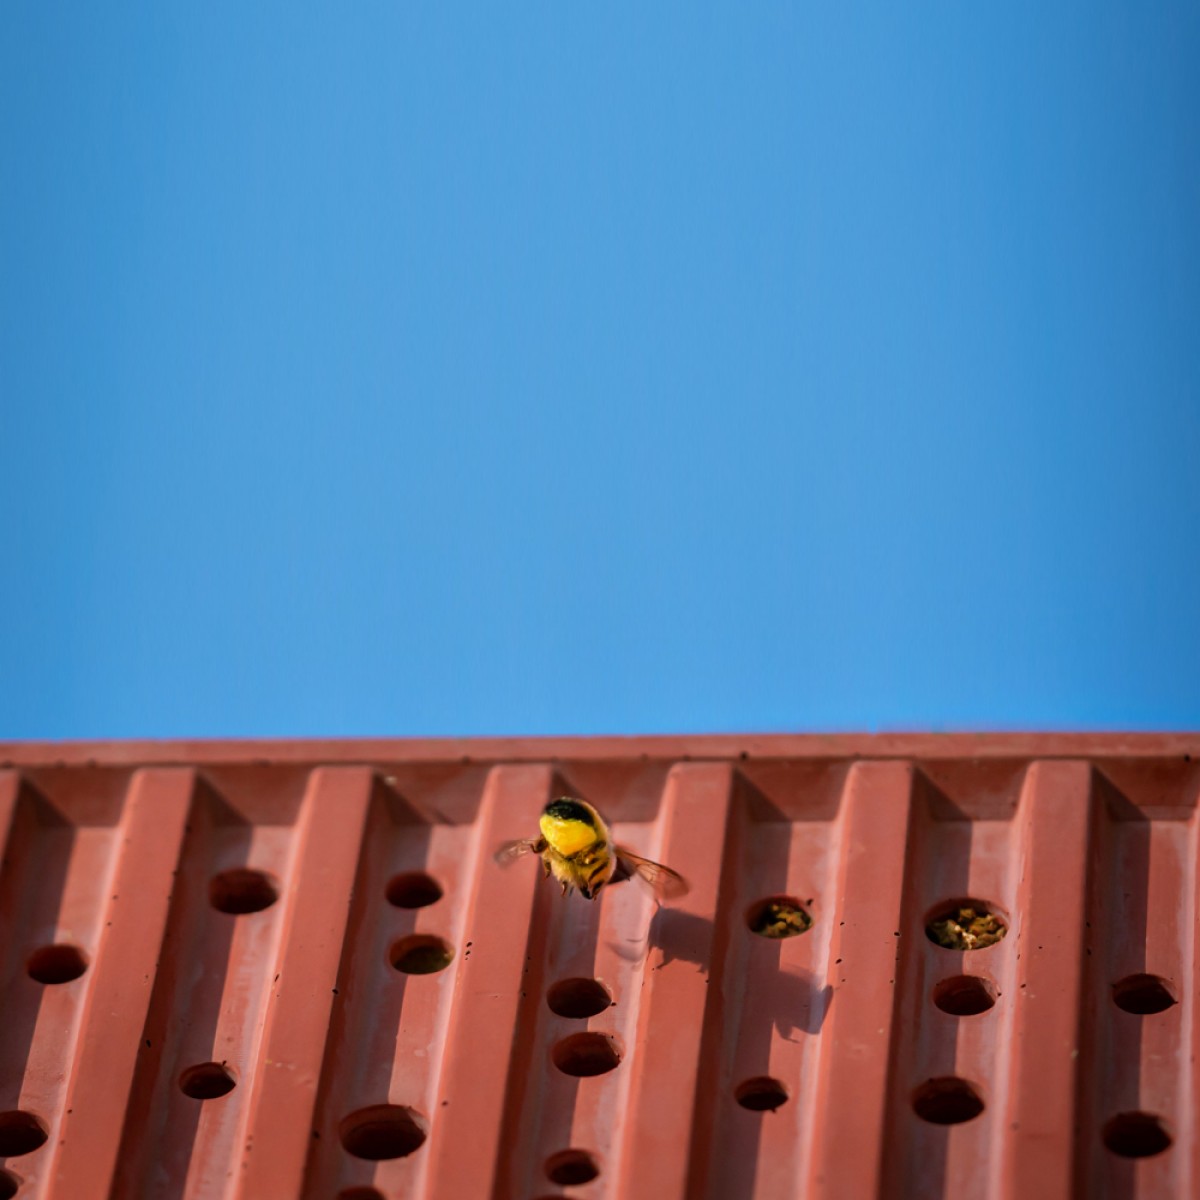 Bienenhotel aus Beton - beecontainer "Gelb" im Überseecontainer-Look von Grellroth Design